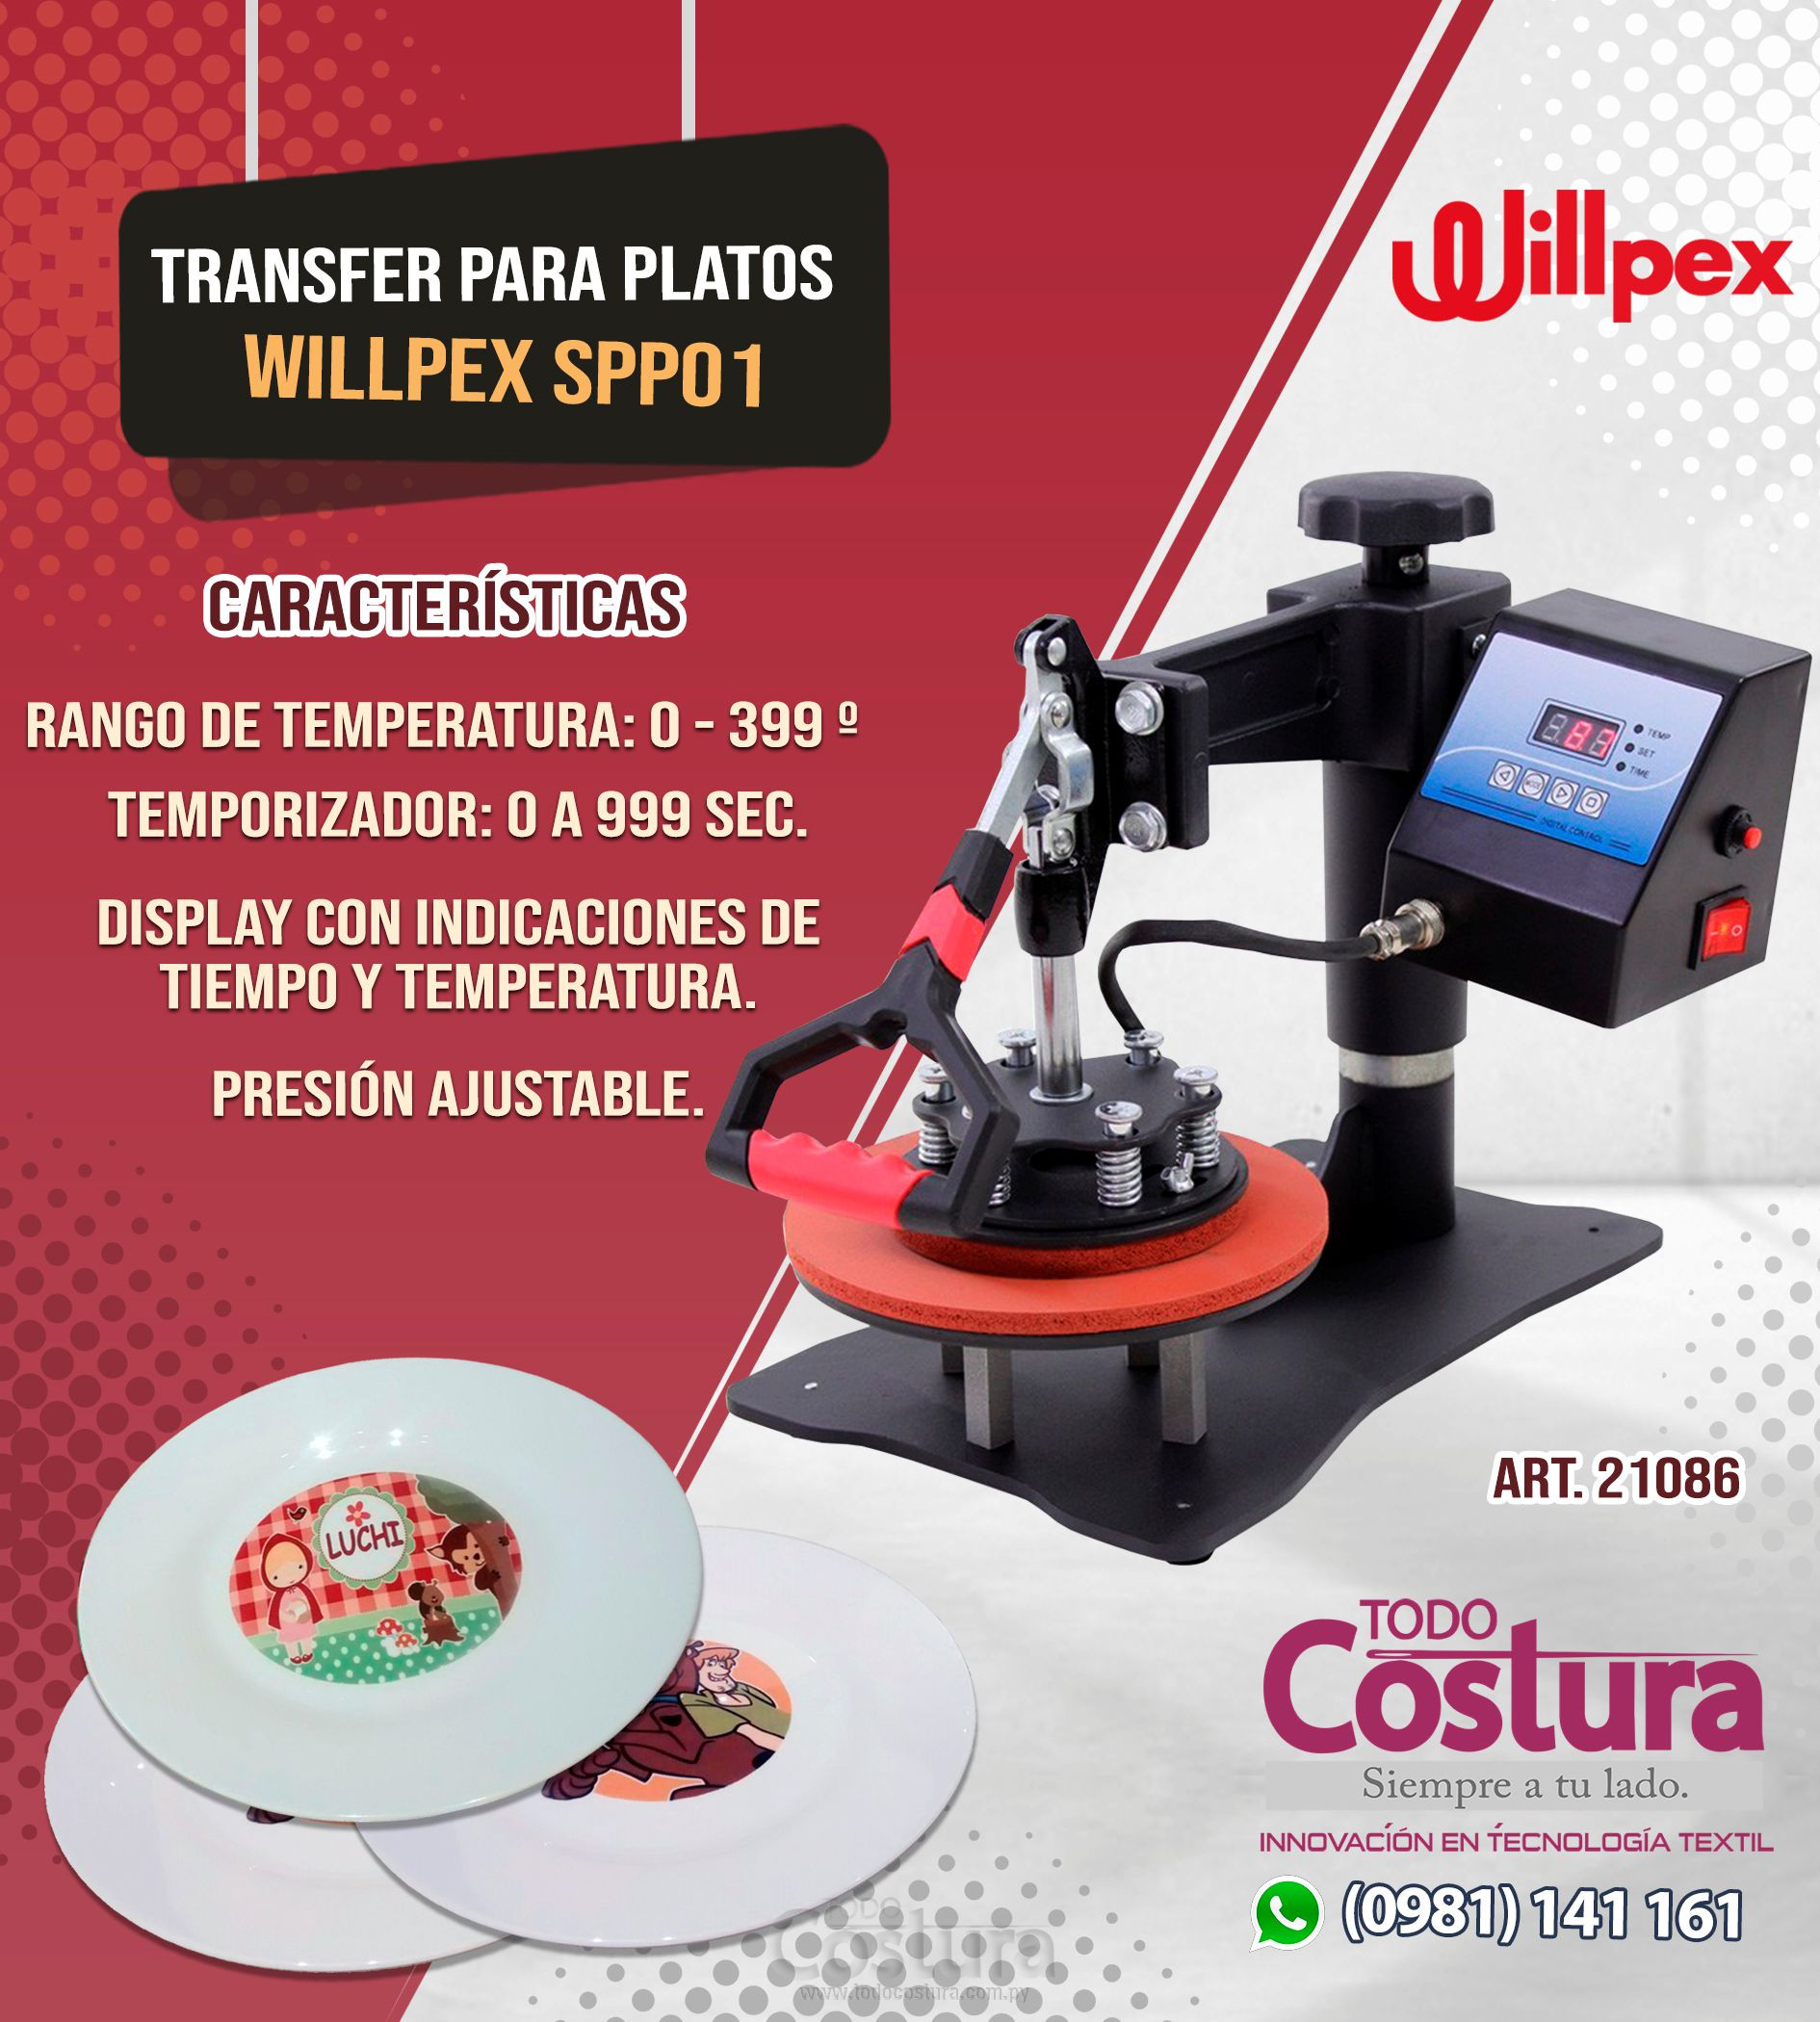 TRANSFER PARA PLATOS WILLPEX SPP01